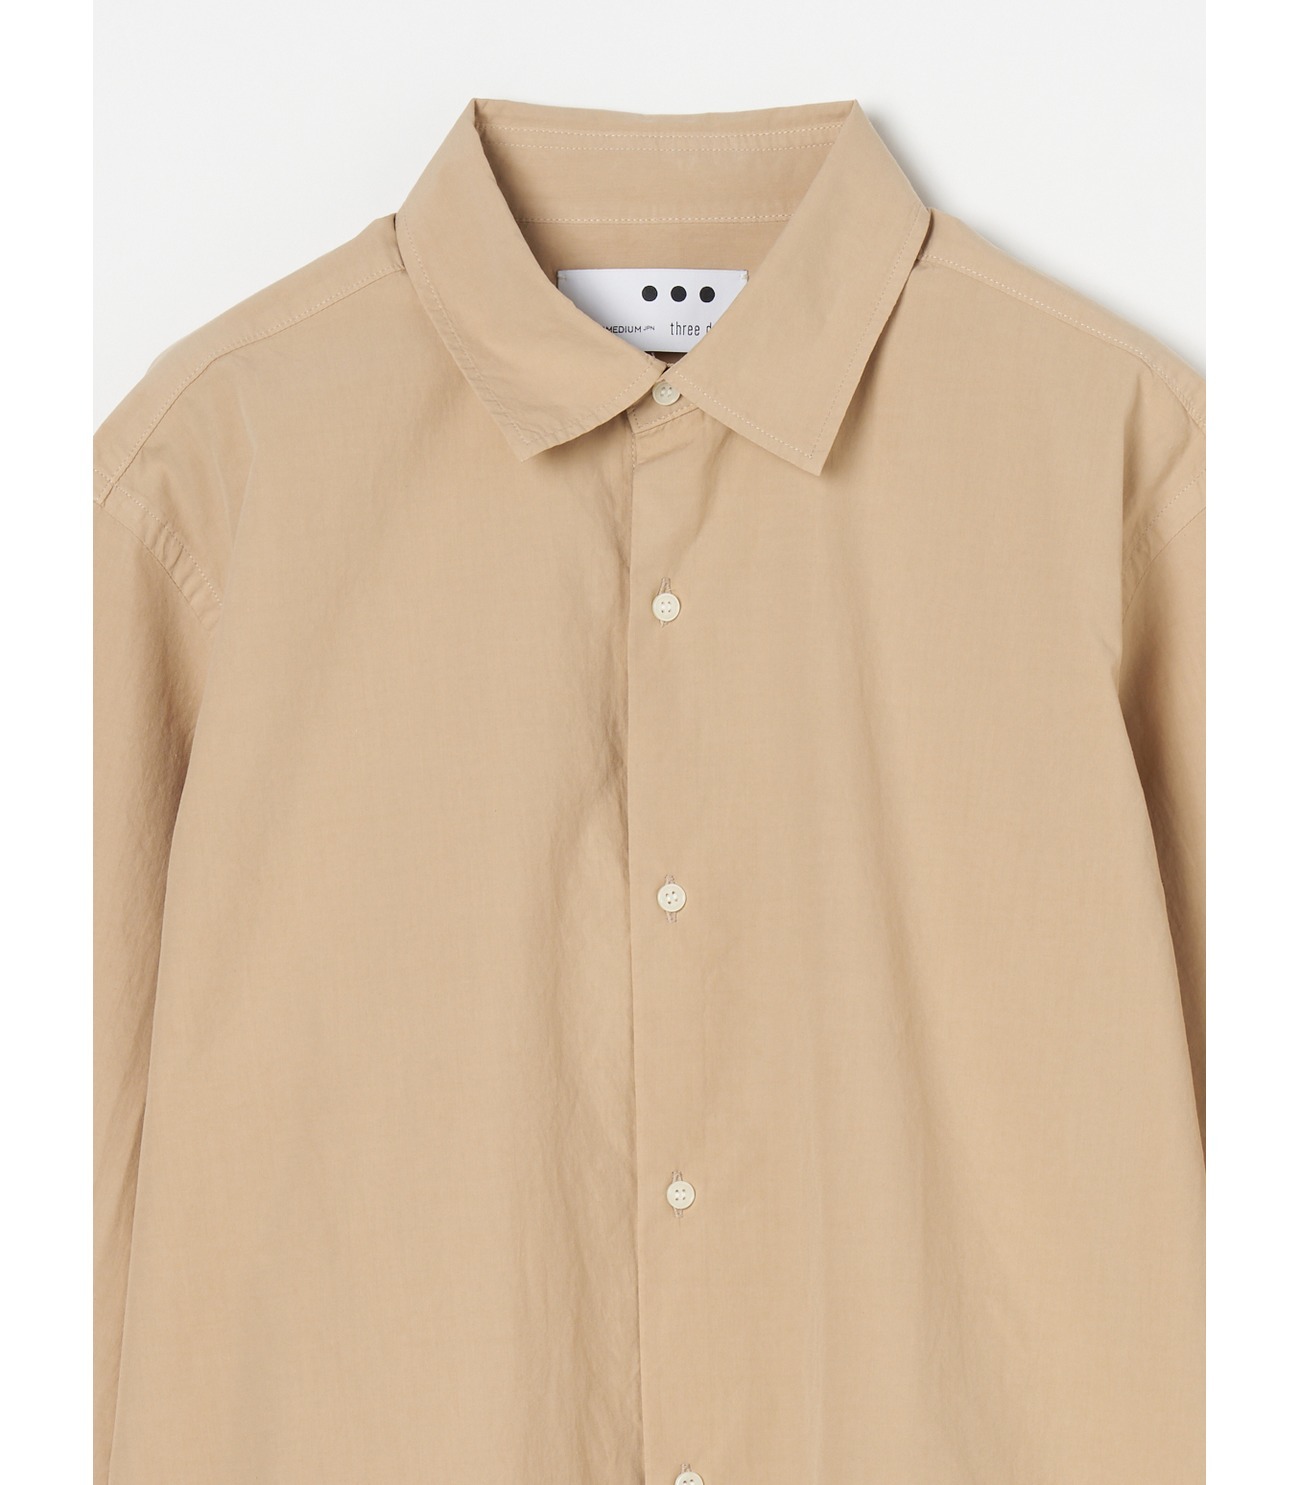 Men's premium suvin typewriter cloth short shirts 詳細画像 beige 2